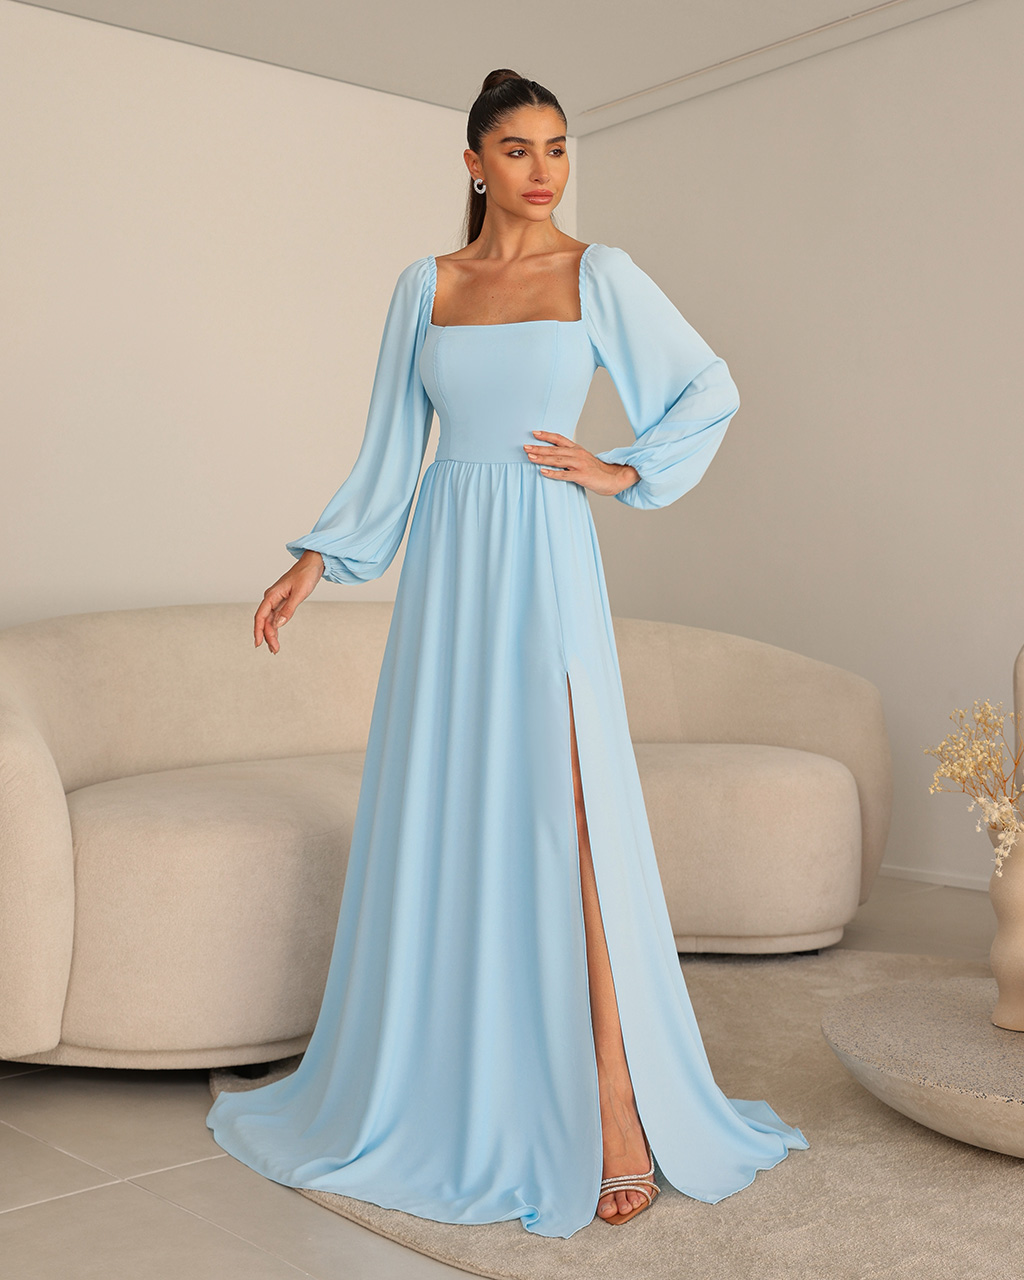 Vestido Longo Azul Serenity Adriana  - Empório NM